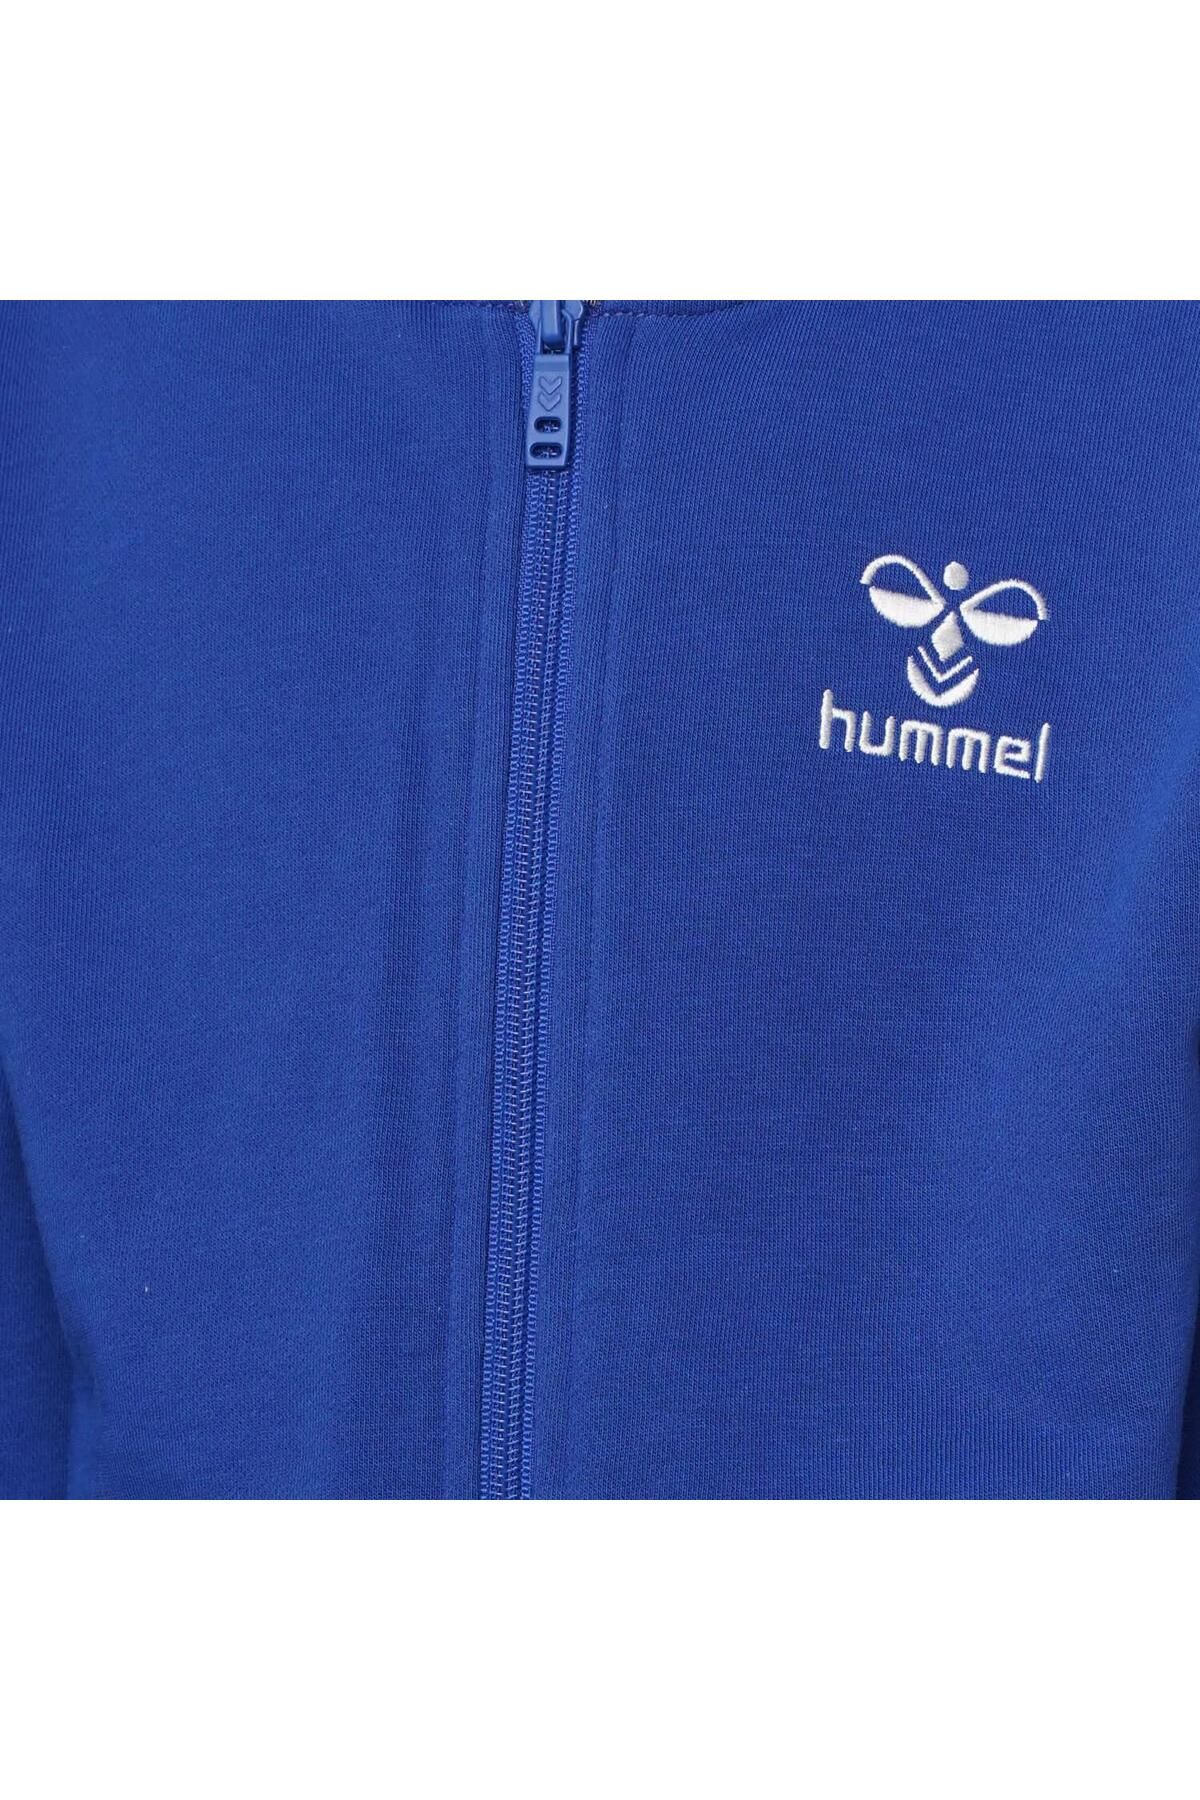 hummel hmlfelısas zıp hoodie